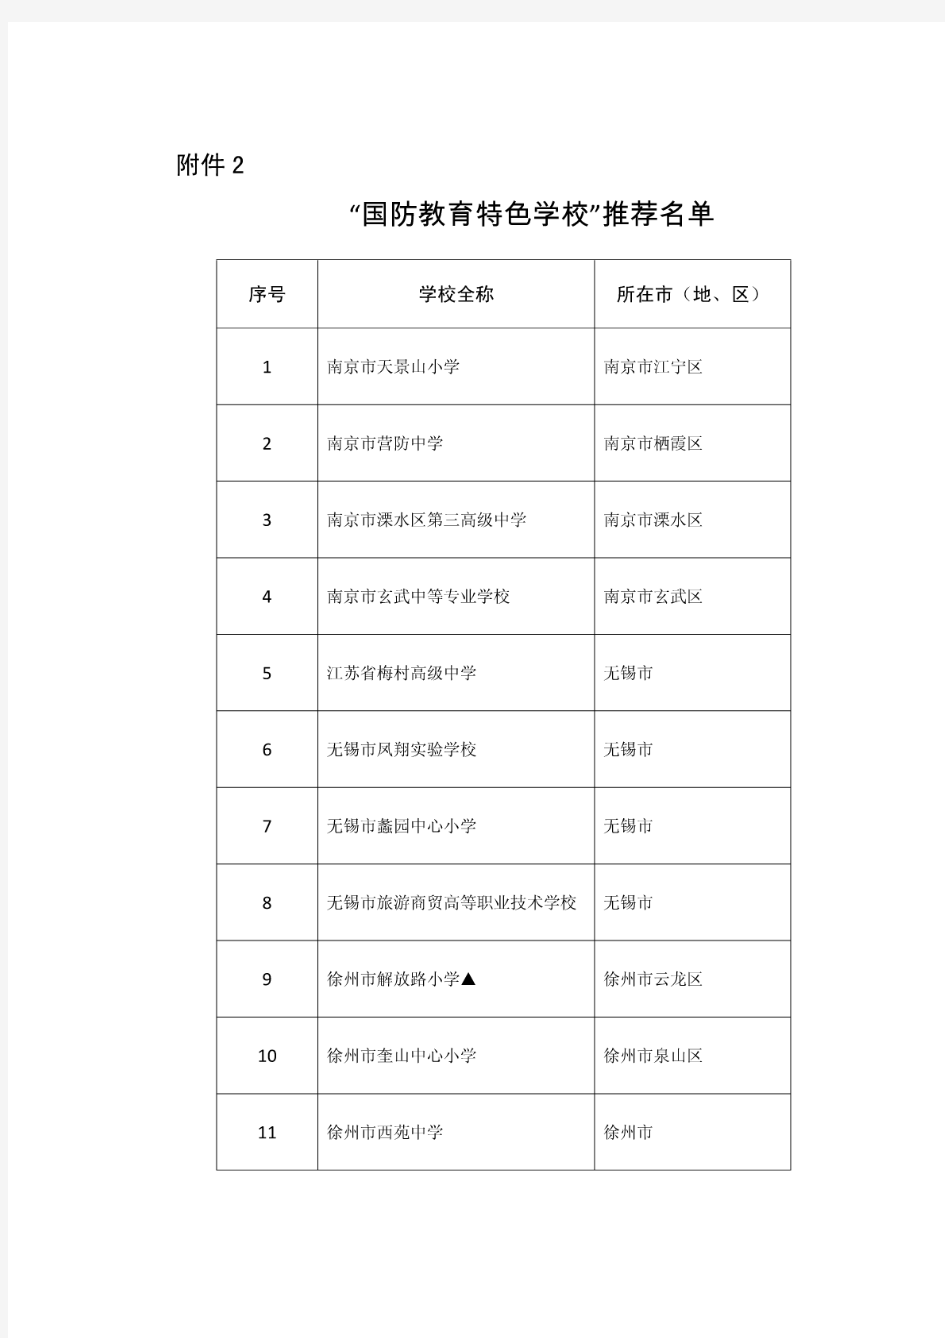 江苏省国防教育特色学校推荐名单(中小学)